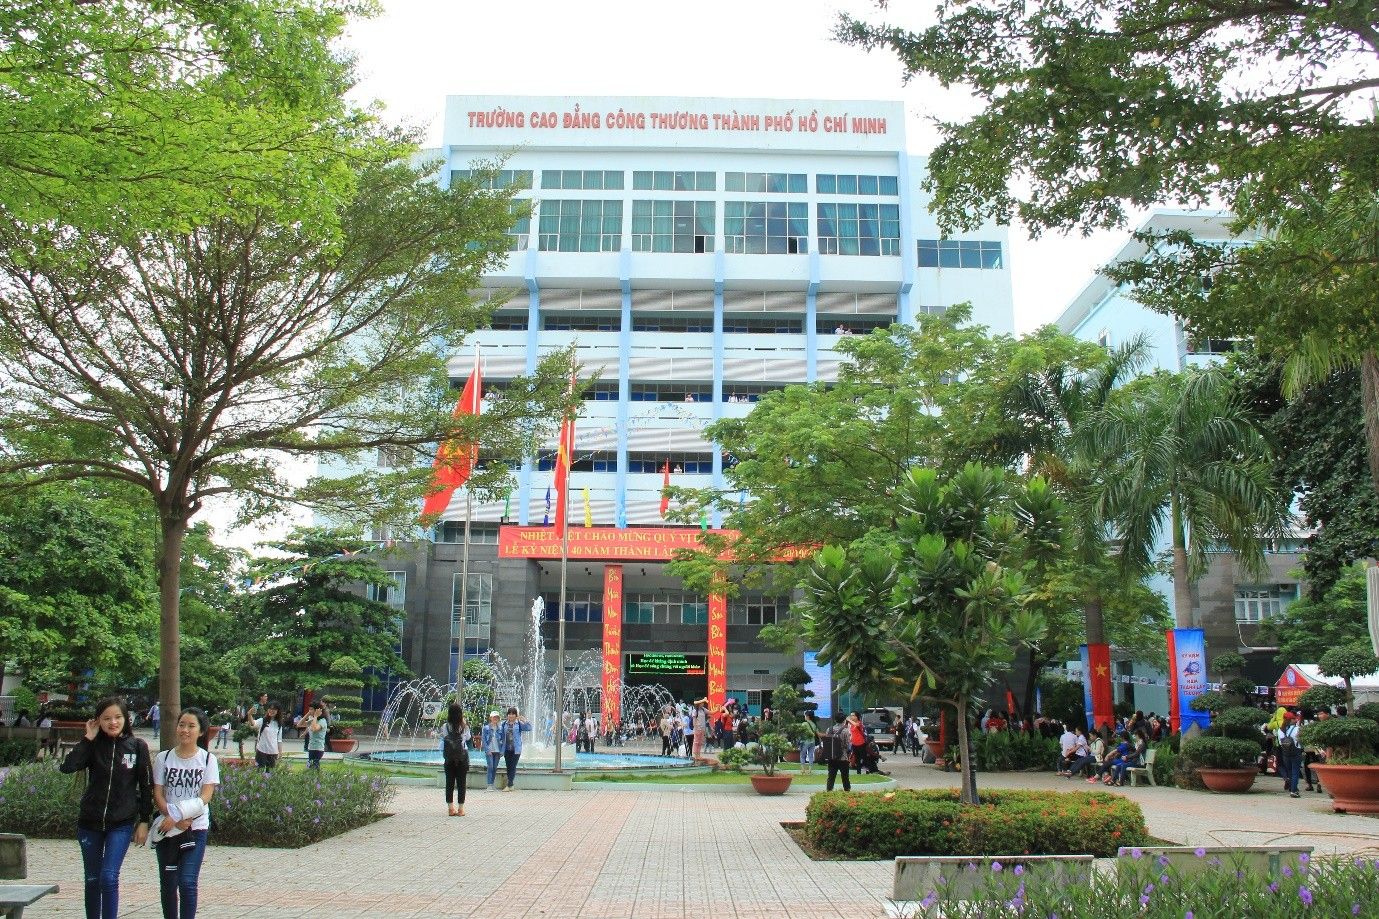 Cập nhật mới nhất giá thuê căn hộ 1PN gần Cao đẳng Công thương TP Hồ Chí Minh, quận 9 TP Thủ Đức